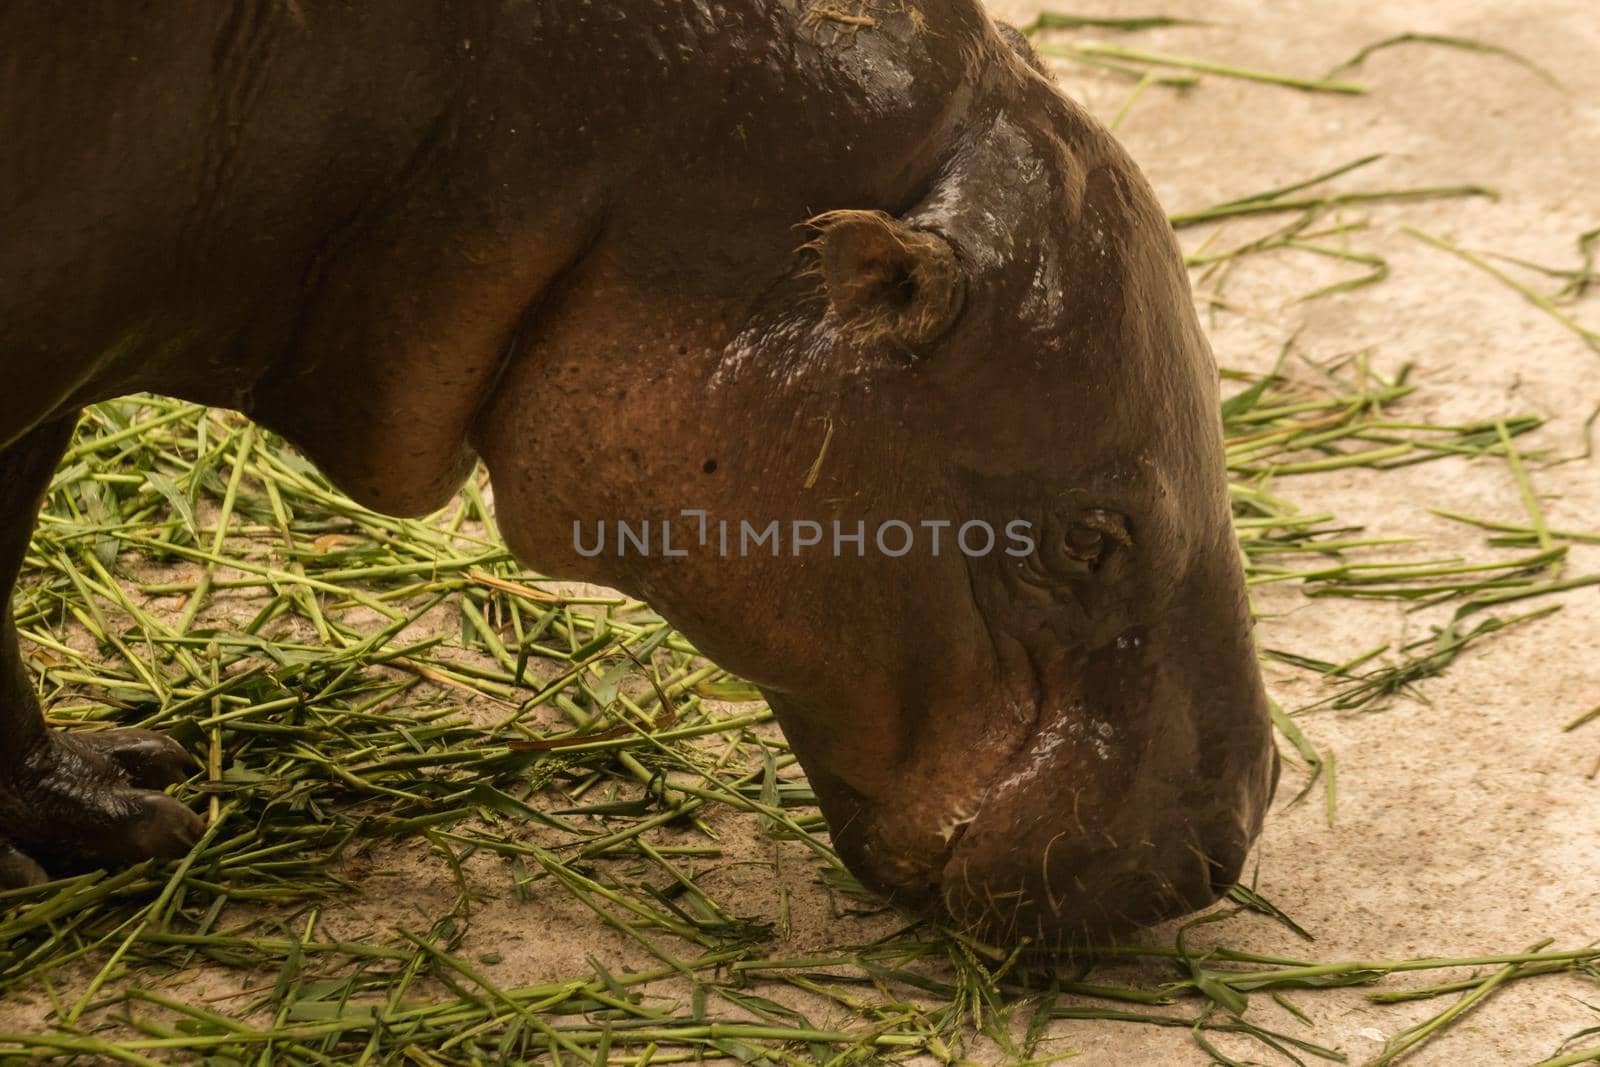 Hippopotamus eating grass
Hippopotamus is a mammal.